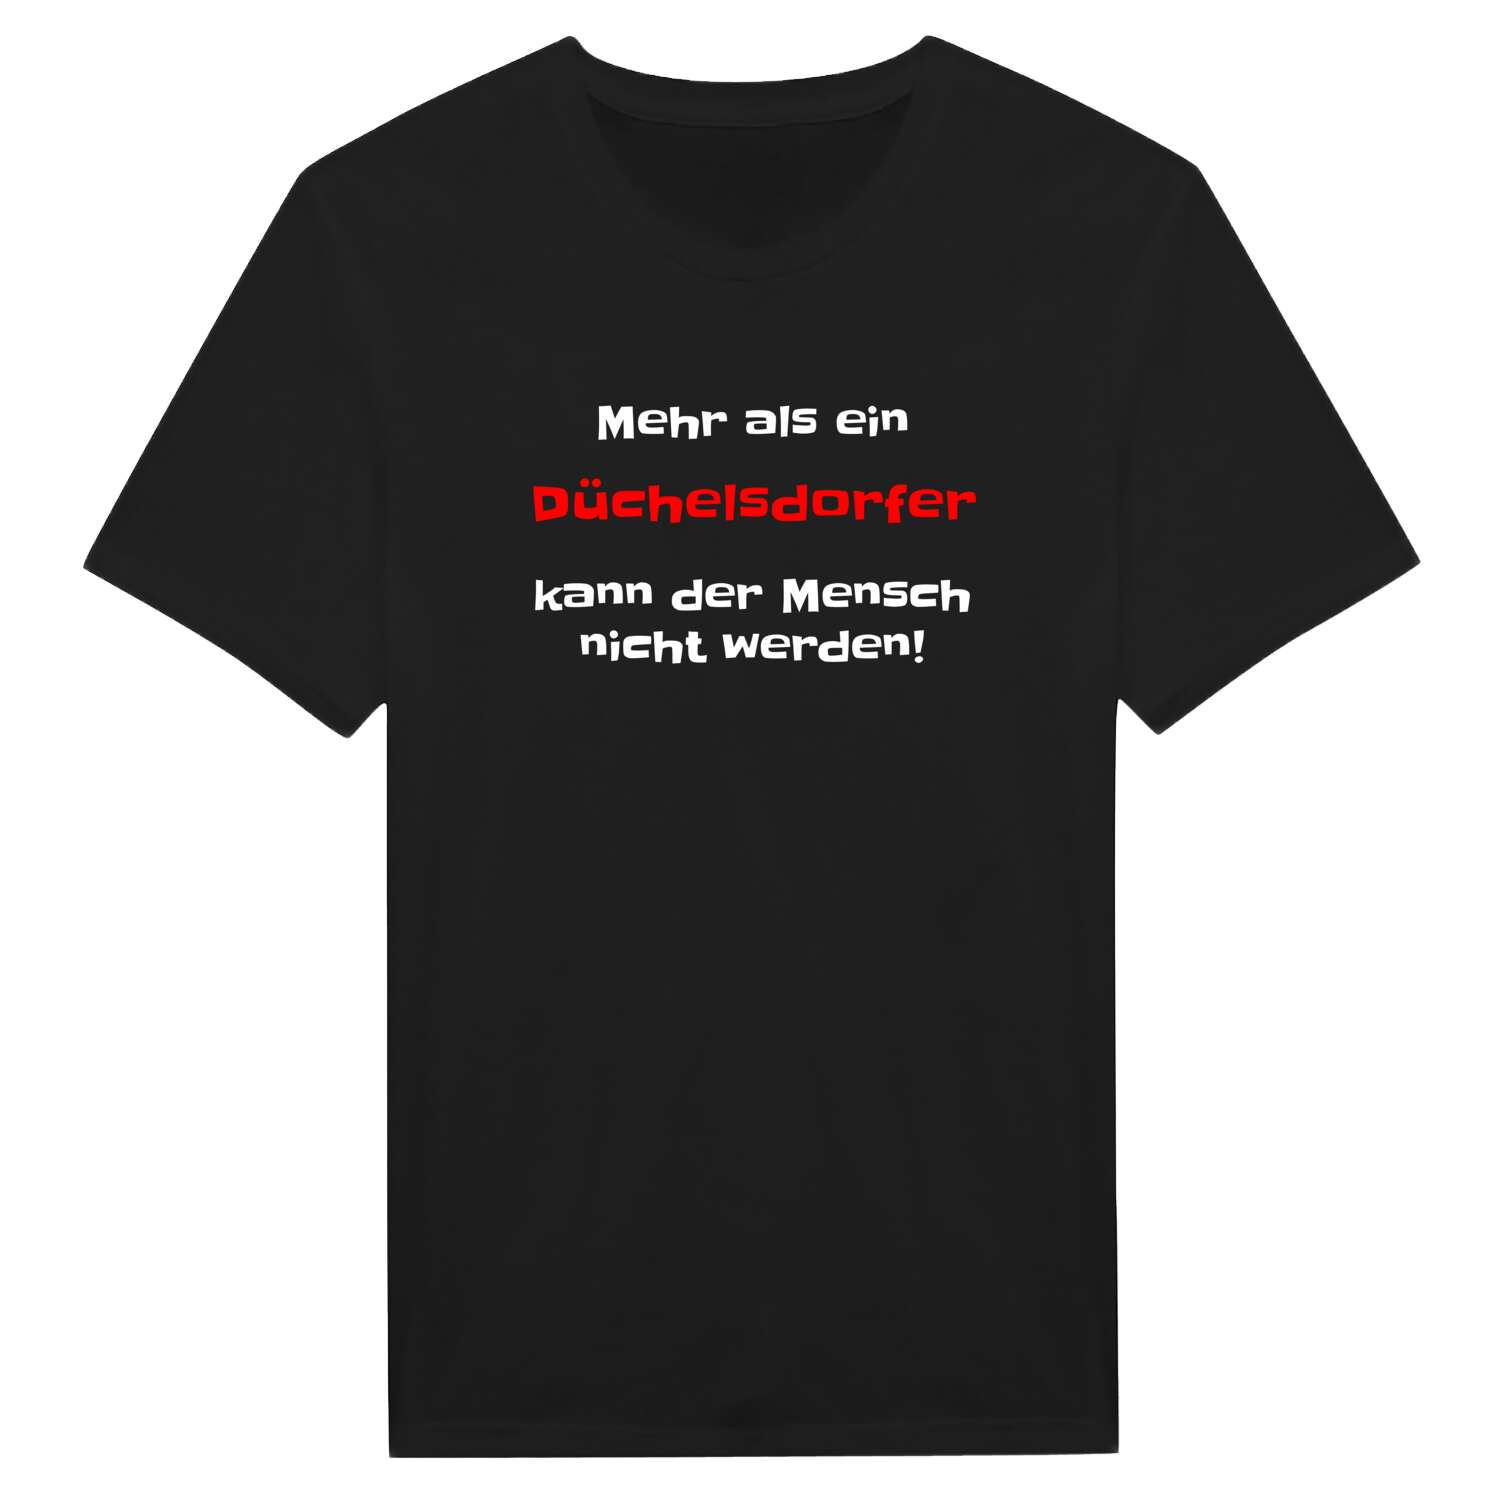 Düchelsdorf T-Shirt »Mehr als ein«